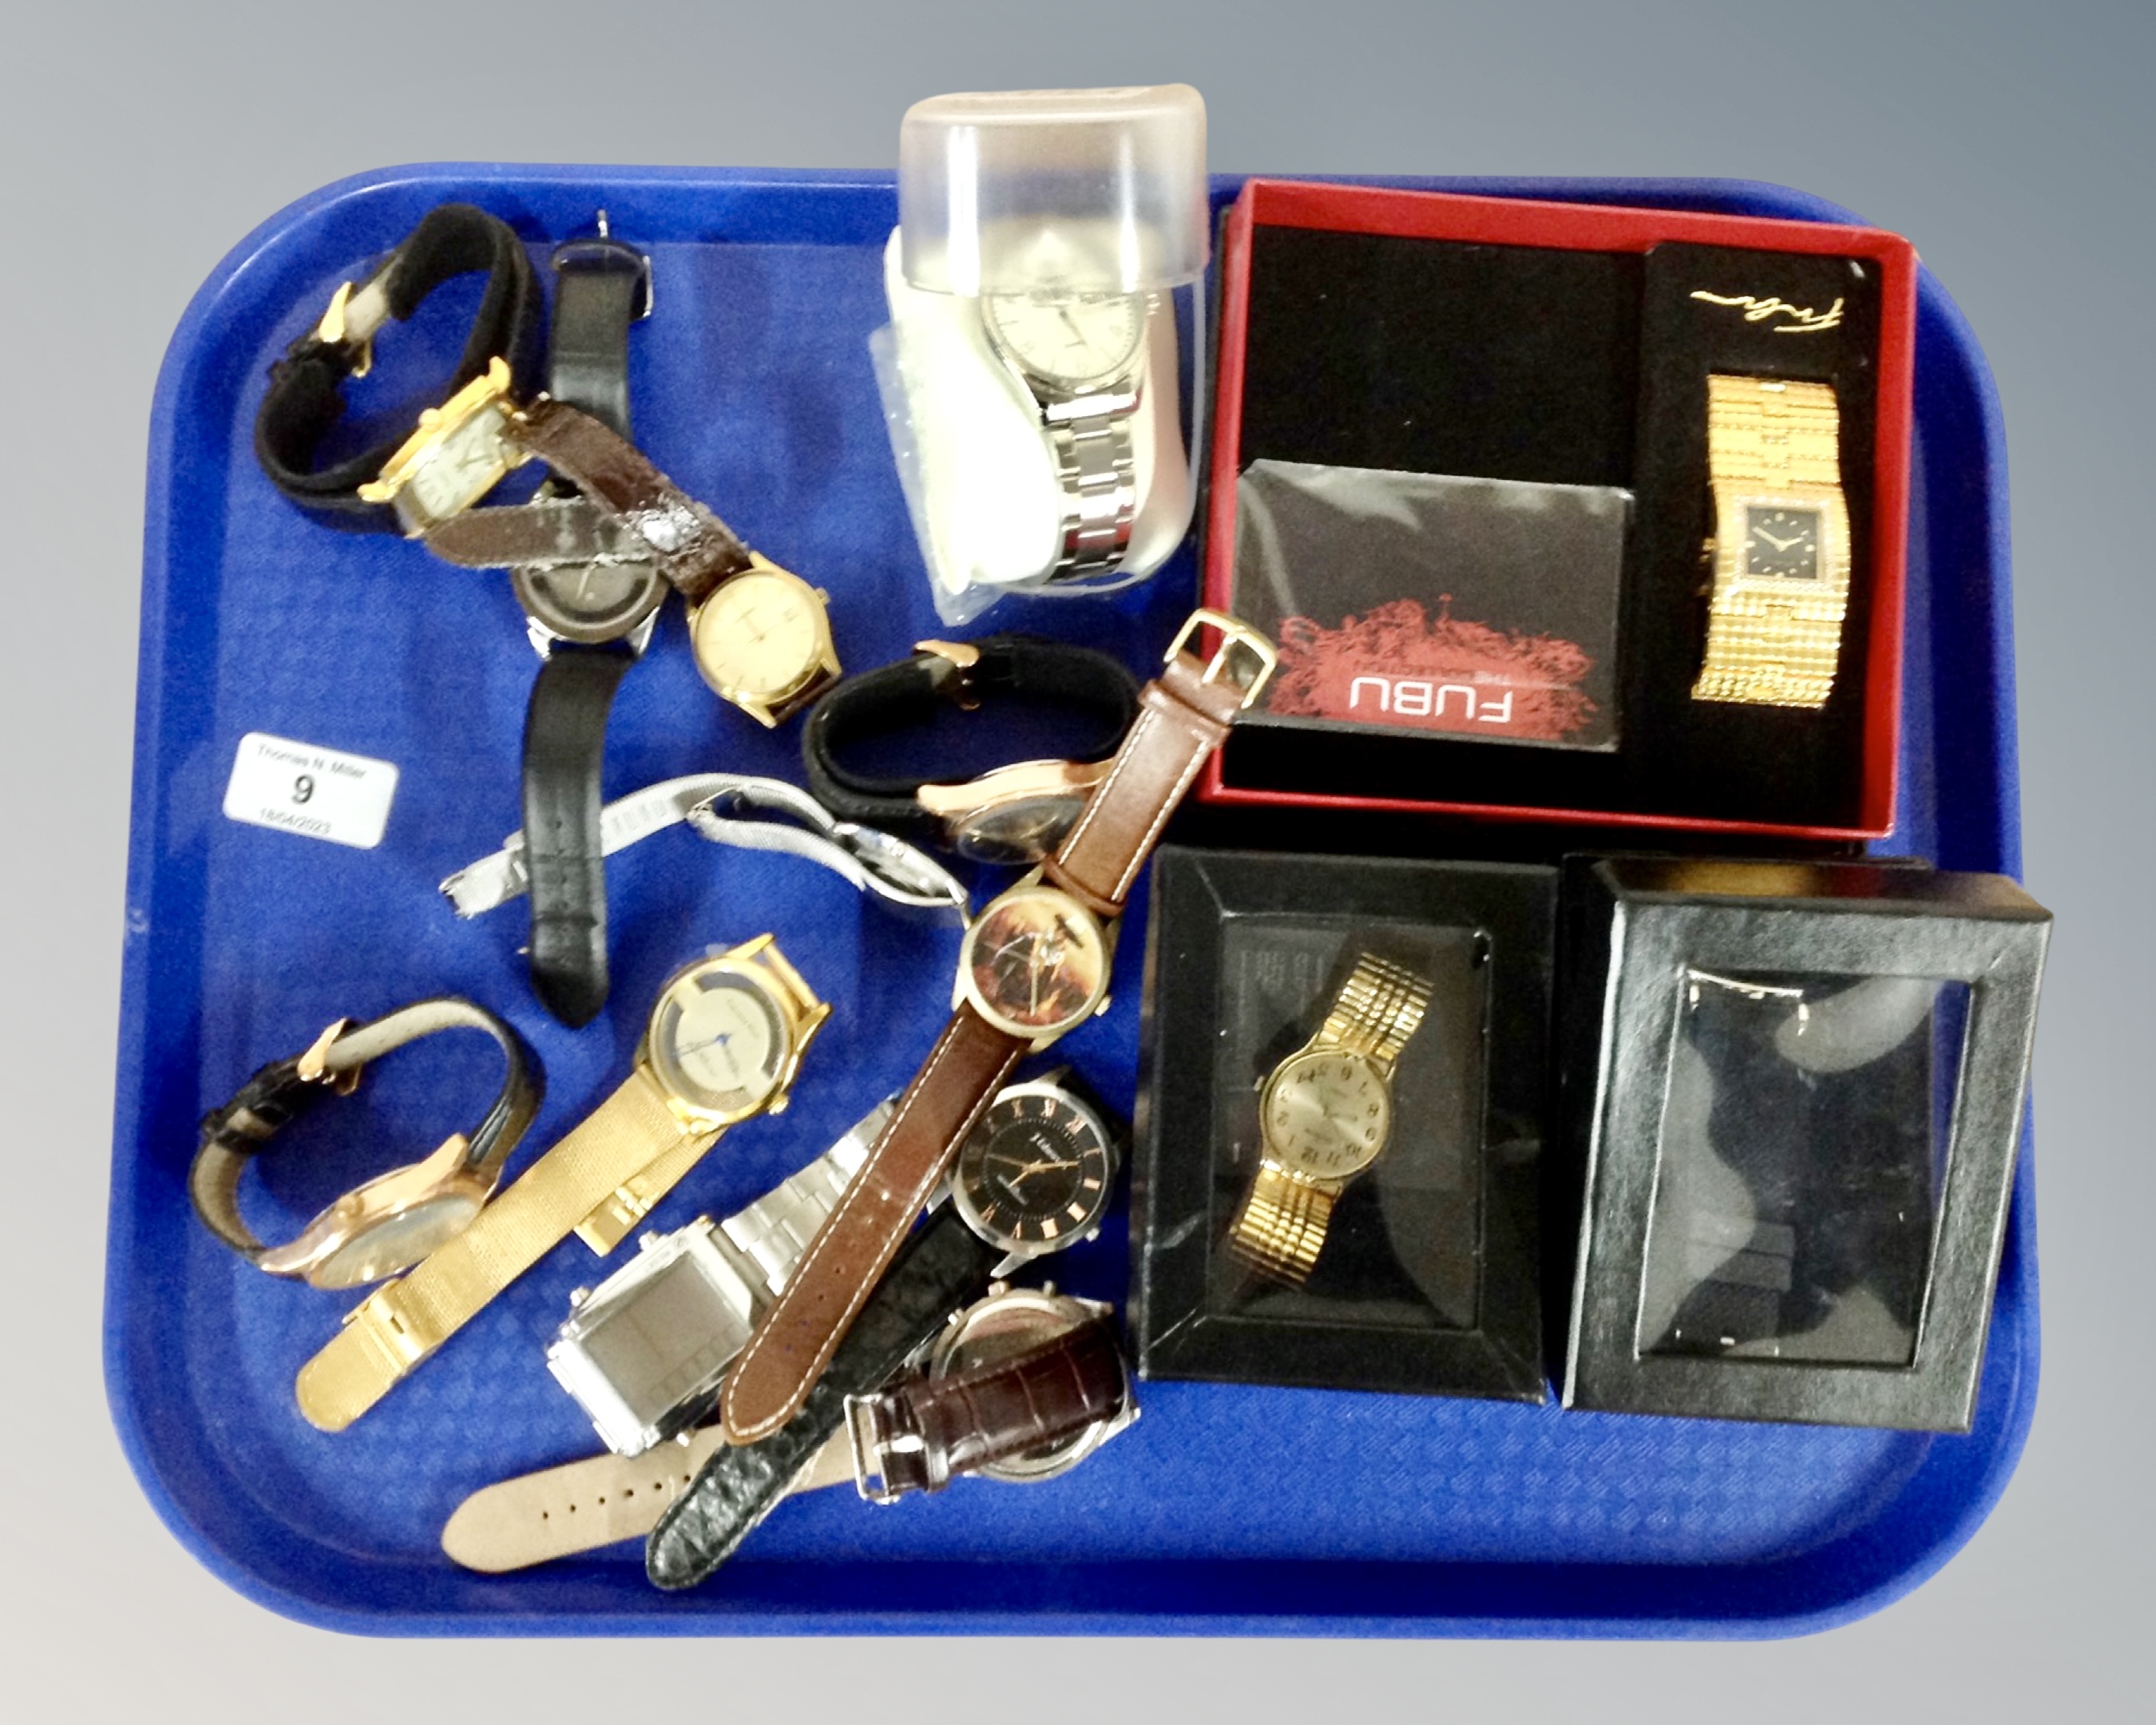 A collection of various dress watches, John Wayne wristwatch etc.